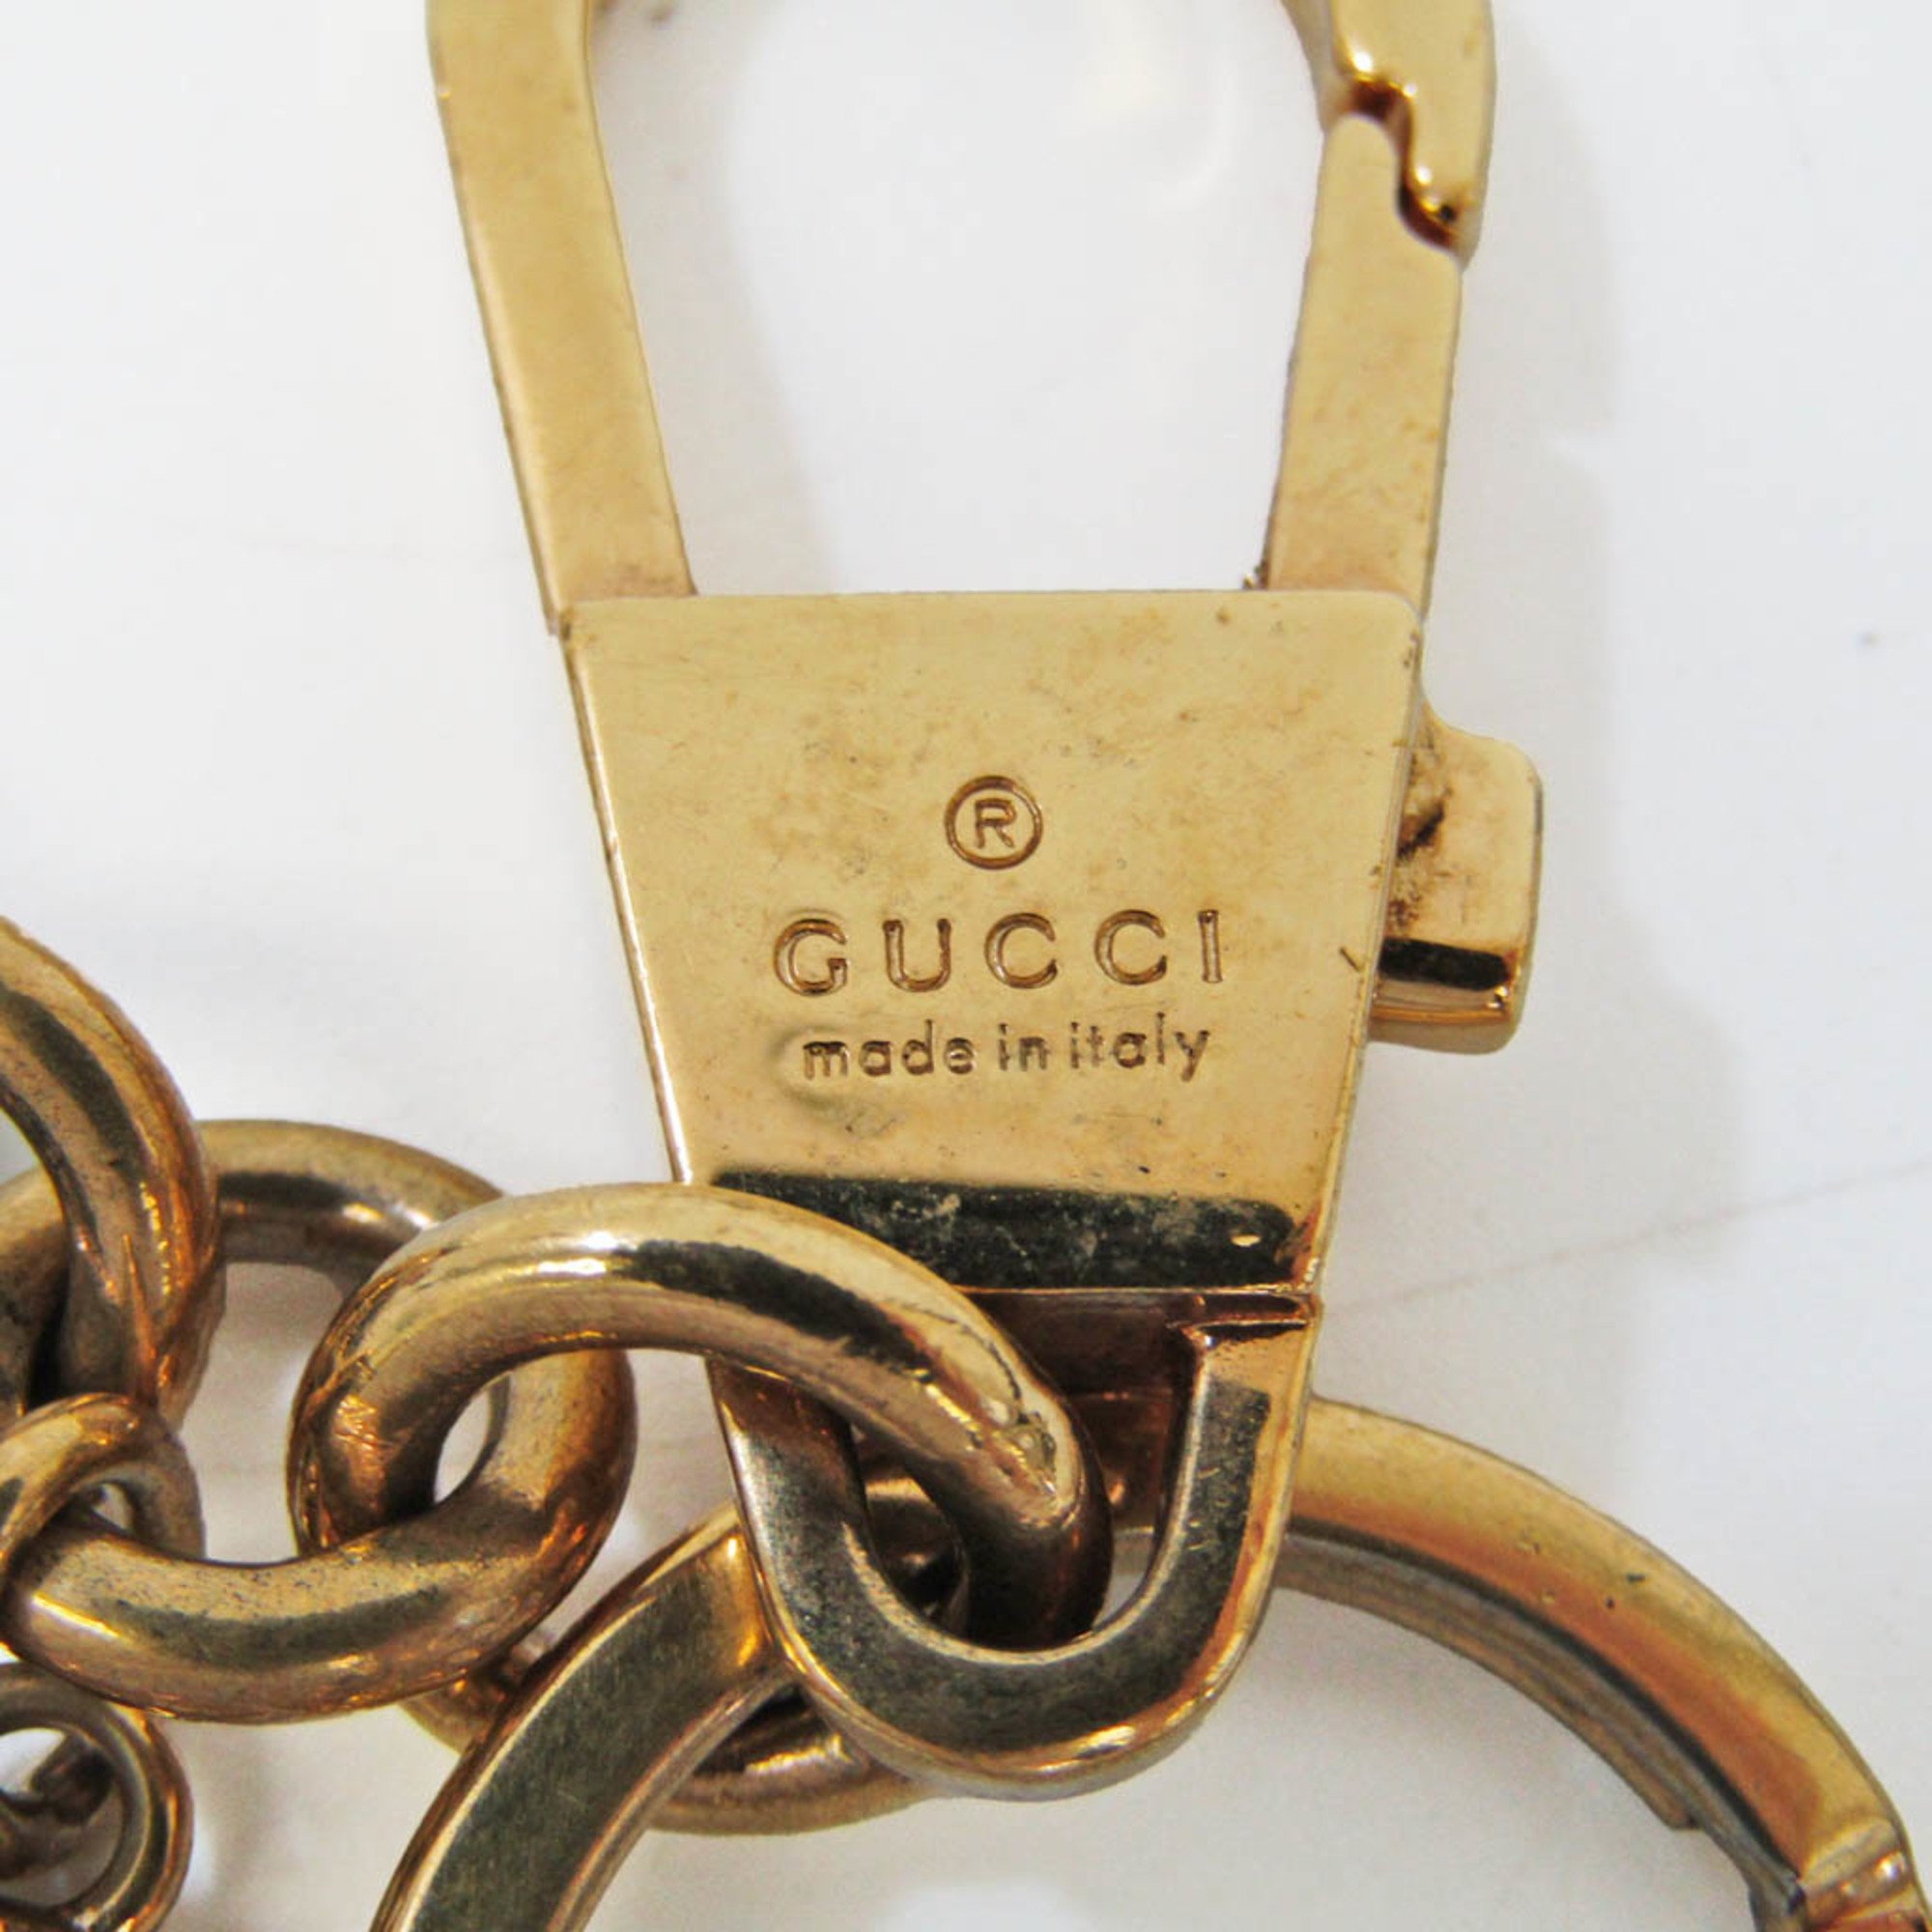 Gucci Heart & Snake 453184 Keyring (Beige,Black,Red Color)